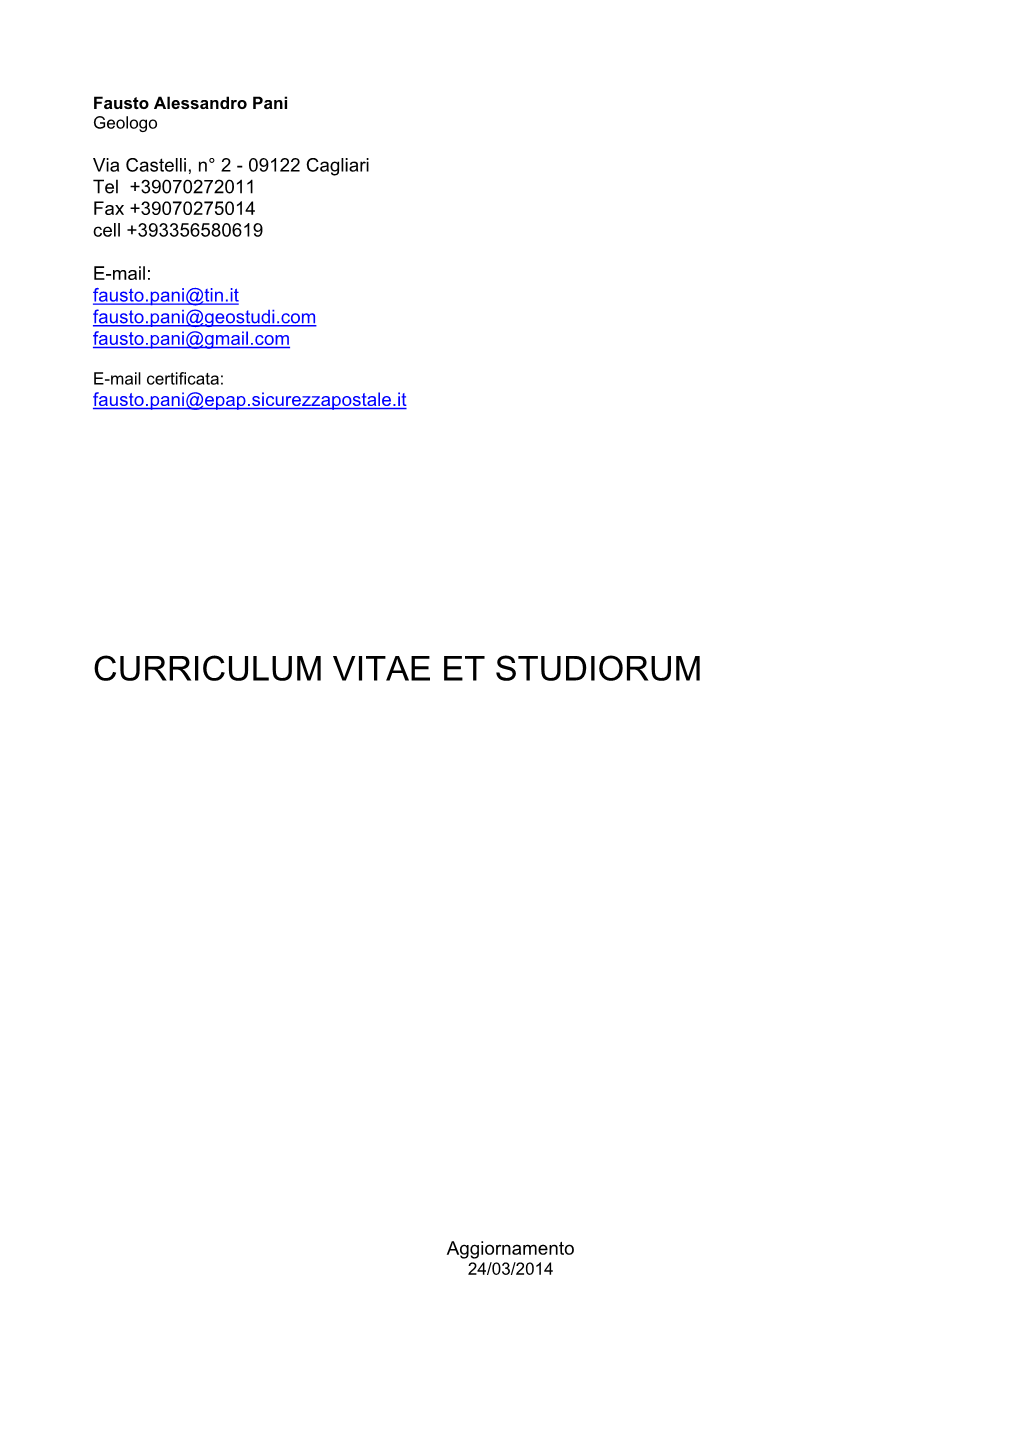 Curriculum Vitae Et Studiorum